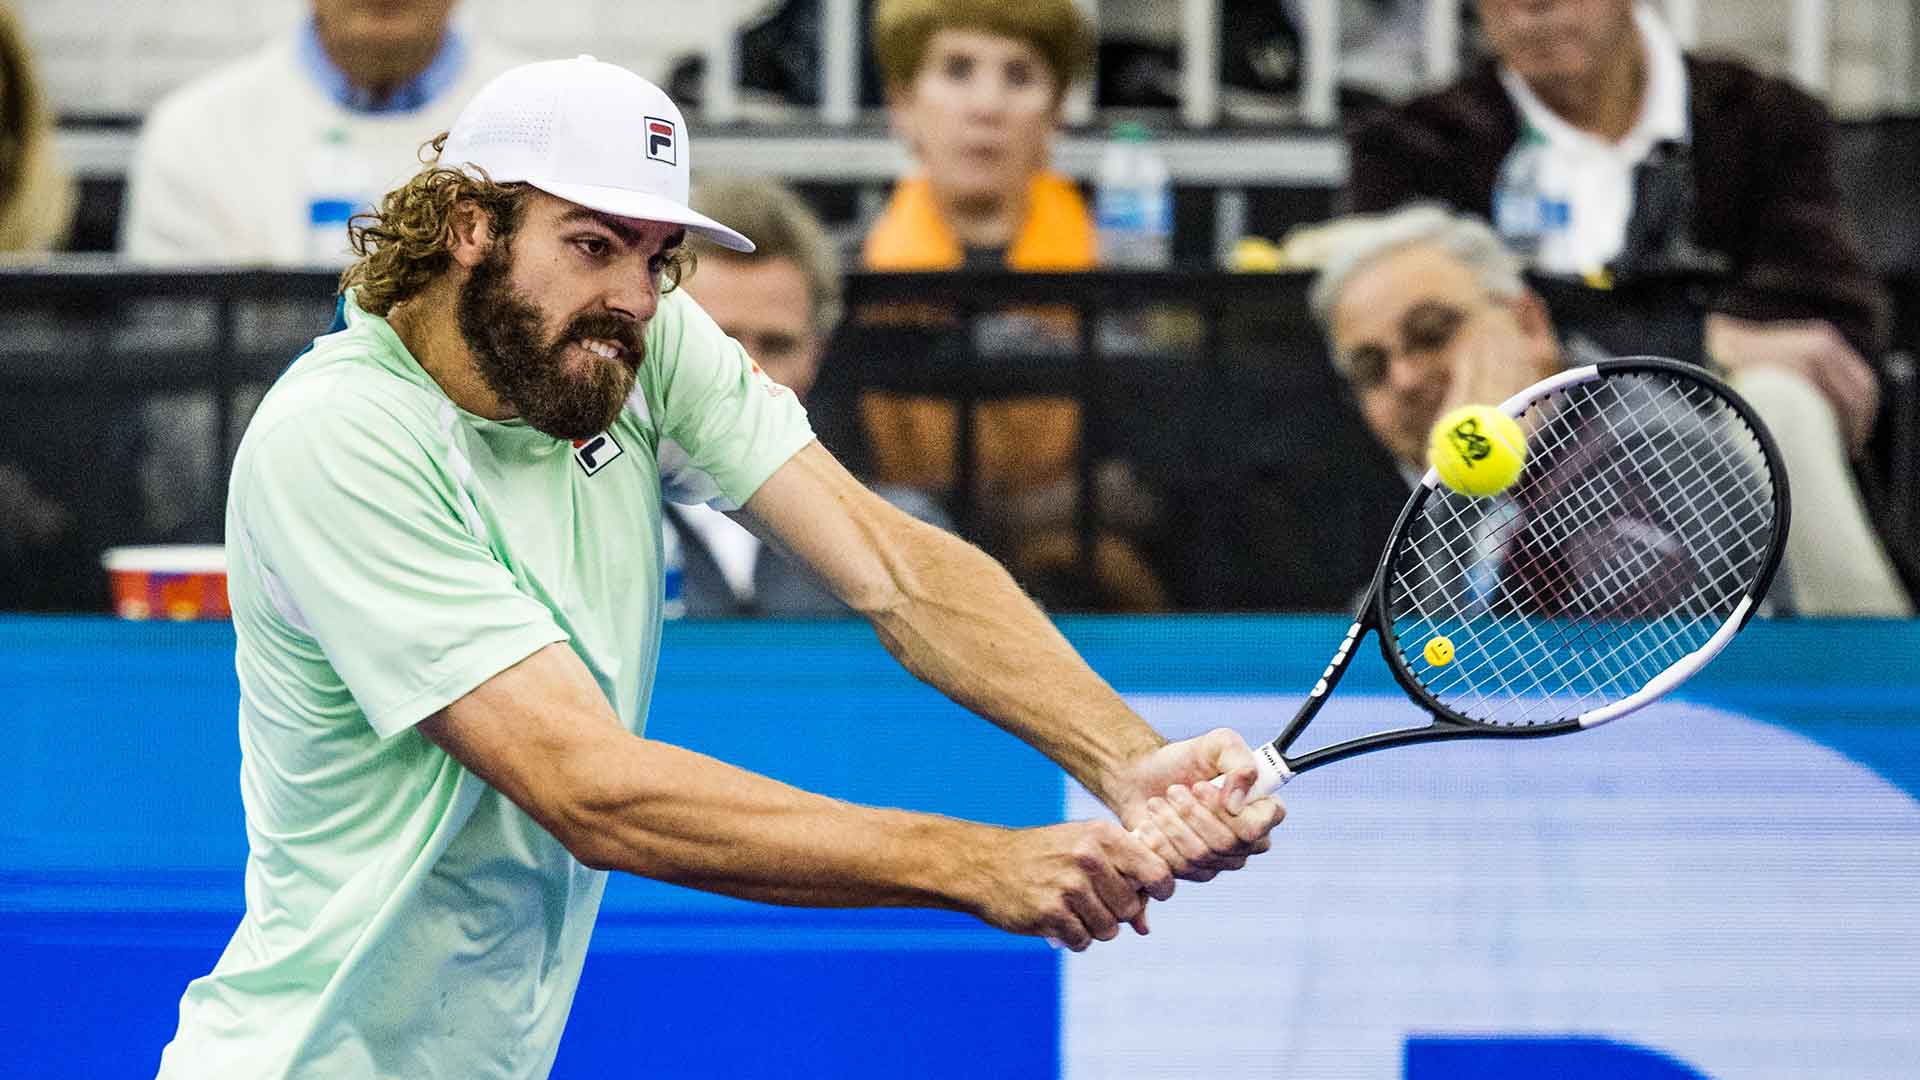 Нов рекорд в ATP Тура: Иснър и Опелка изиграха най-дългия тайбрек в Откритата ера